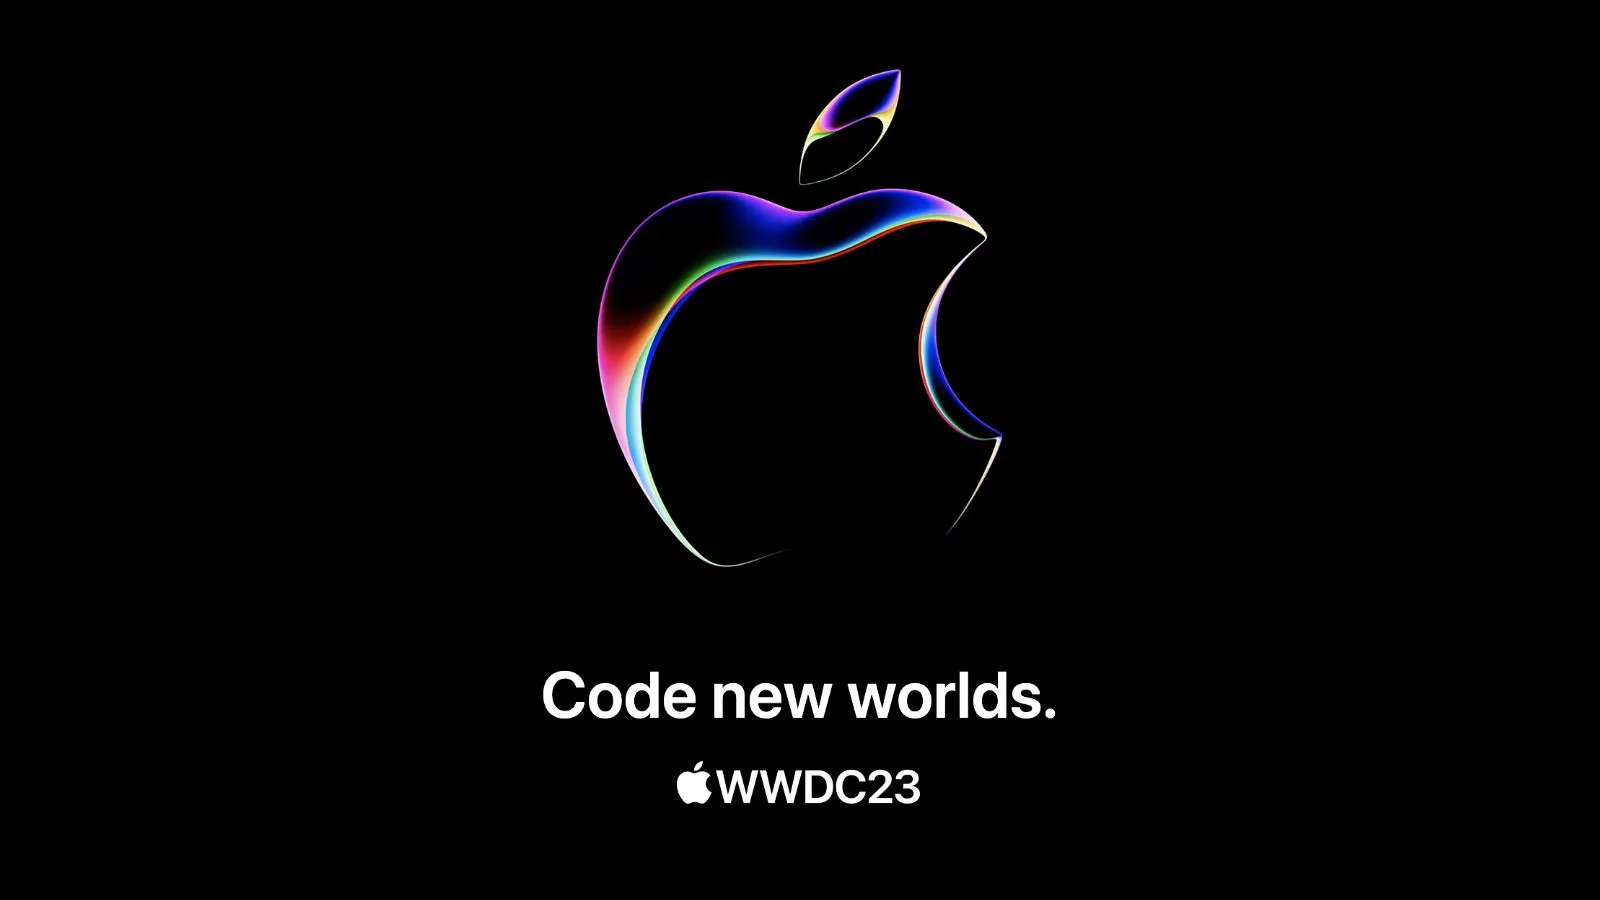 Apple hé lộ về "kỉ nguyên mới" và nhắc đến "lập trình thế giới mới"